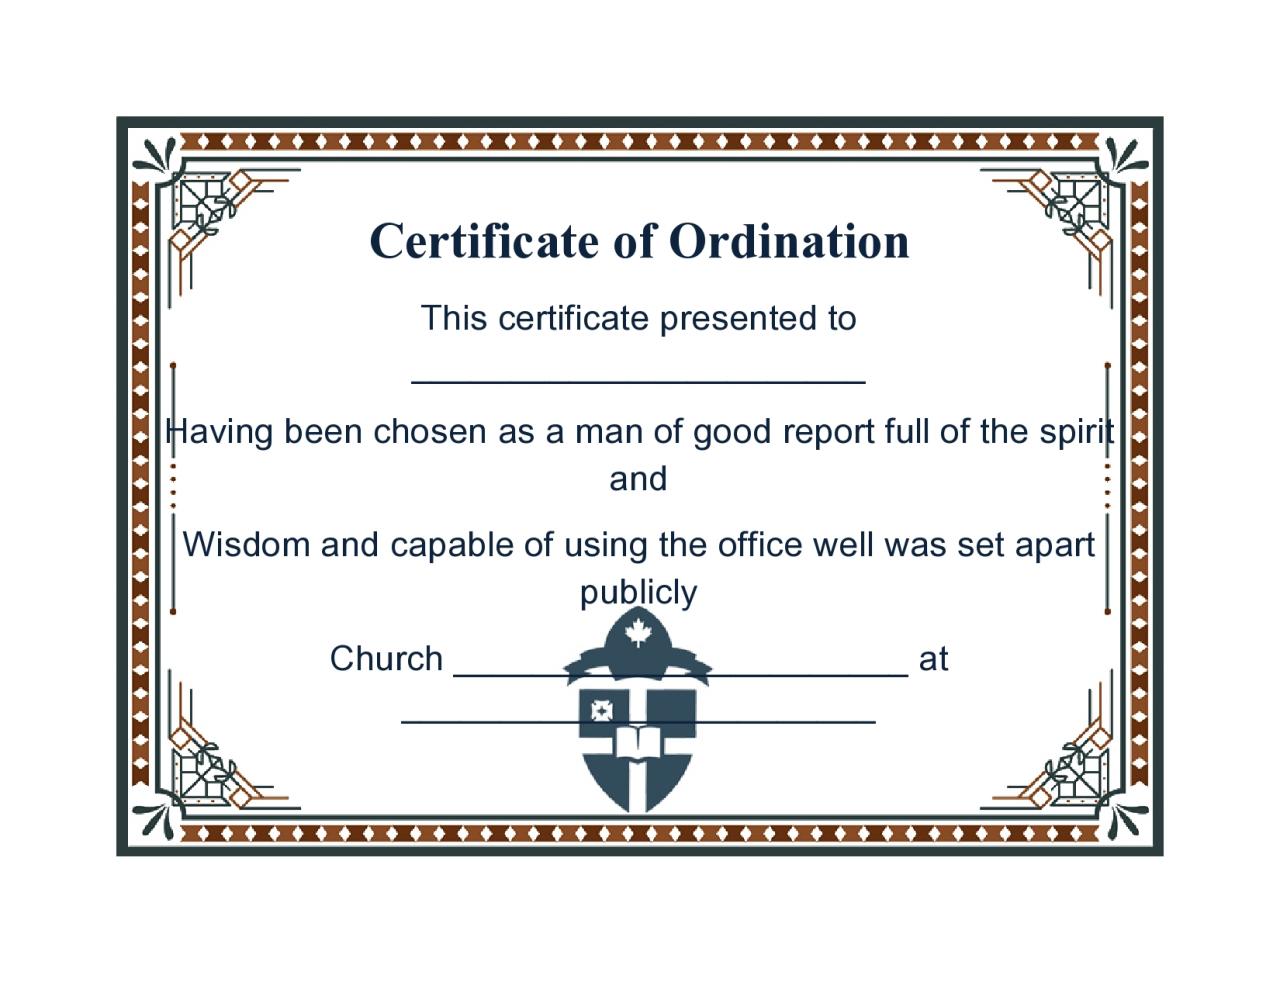 Certificado de ordenación libre 16